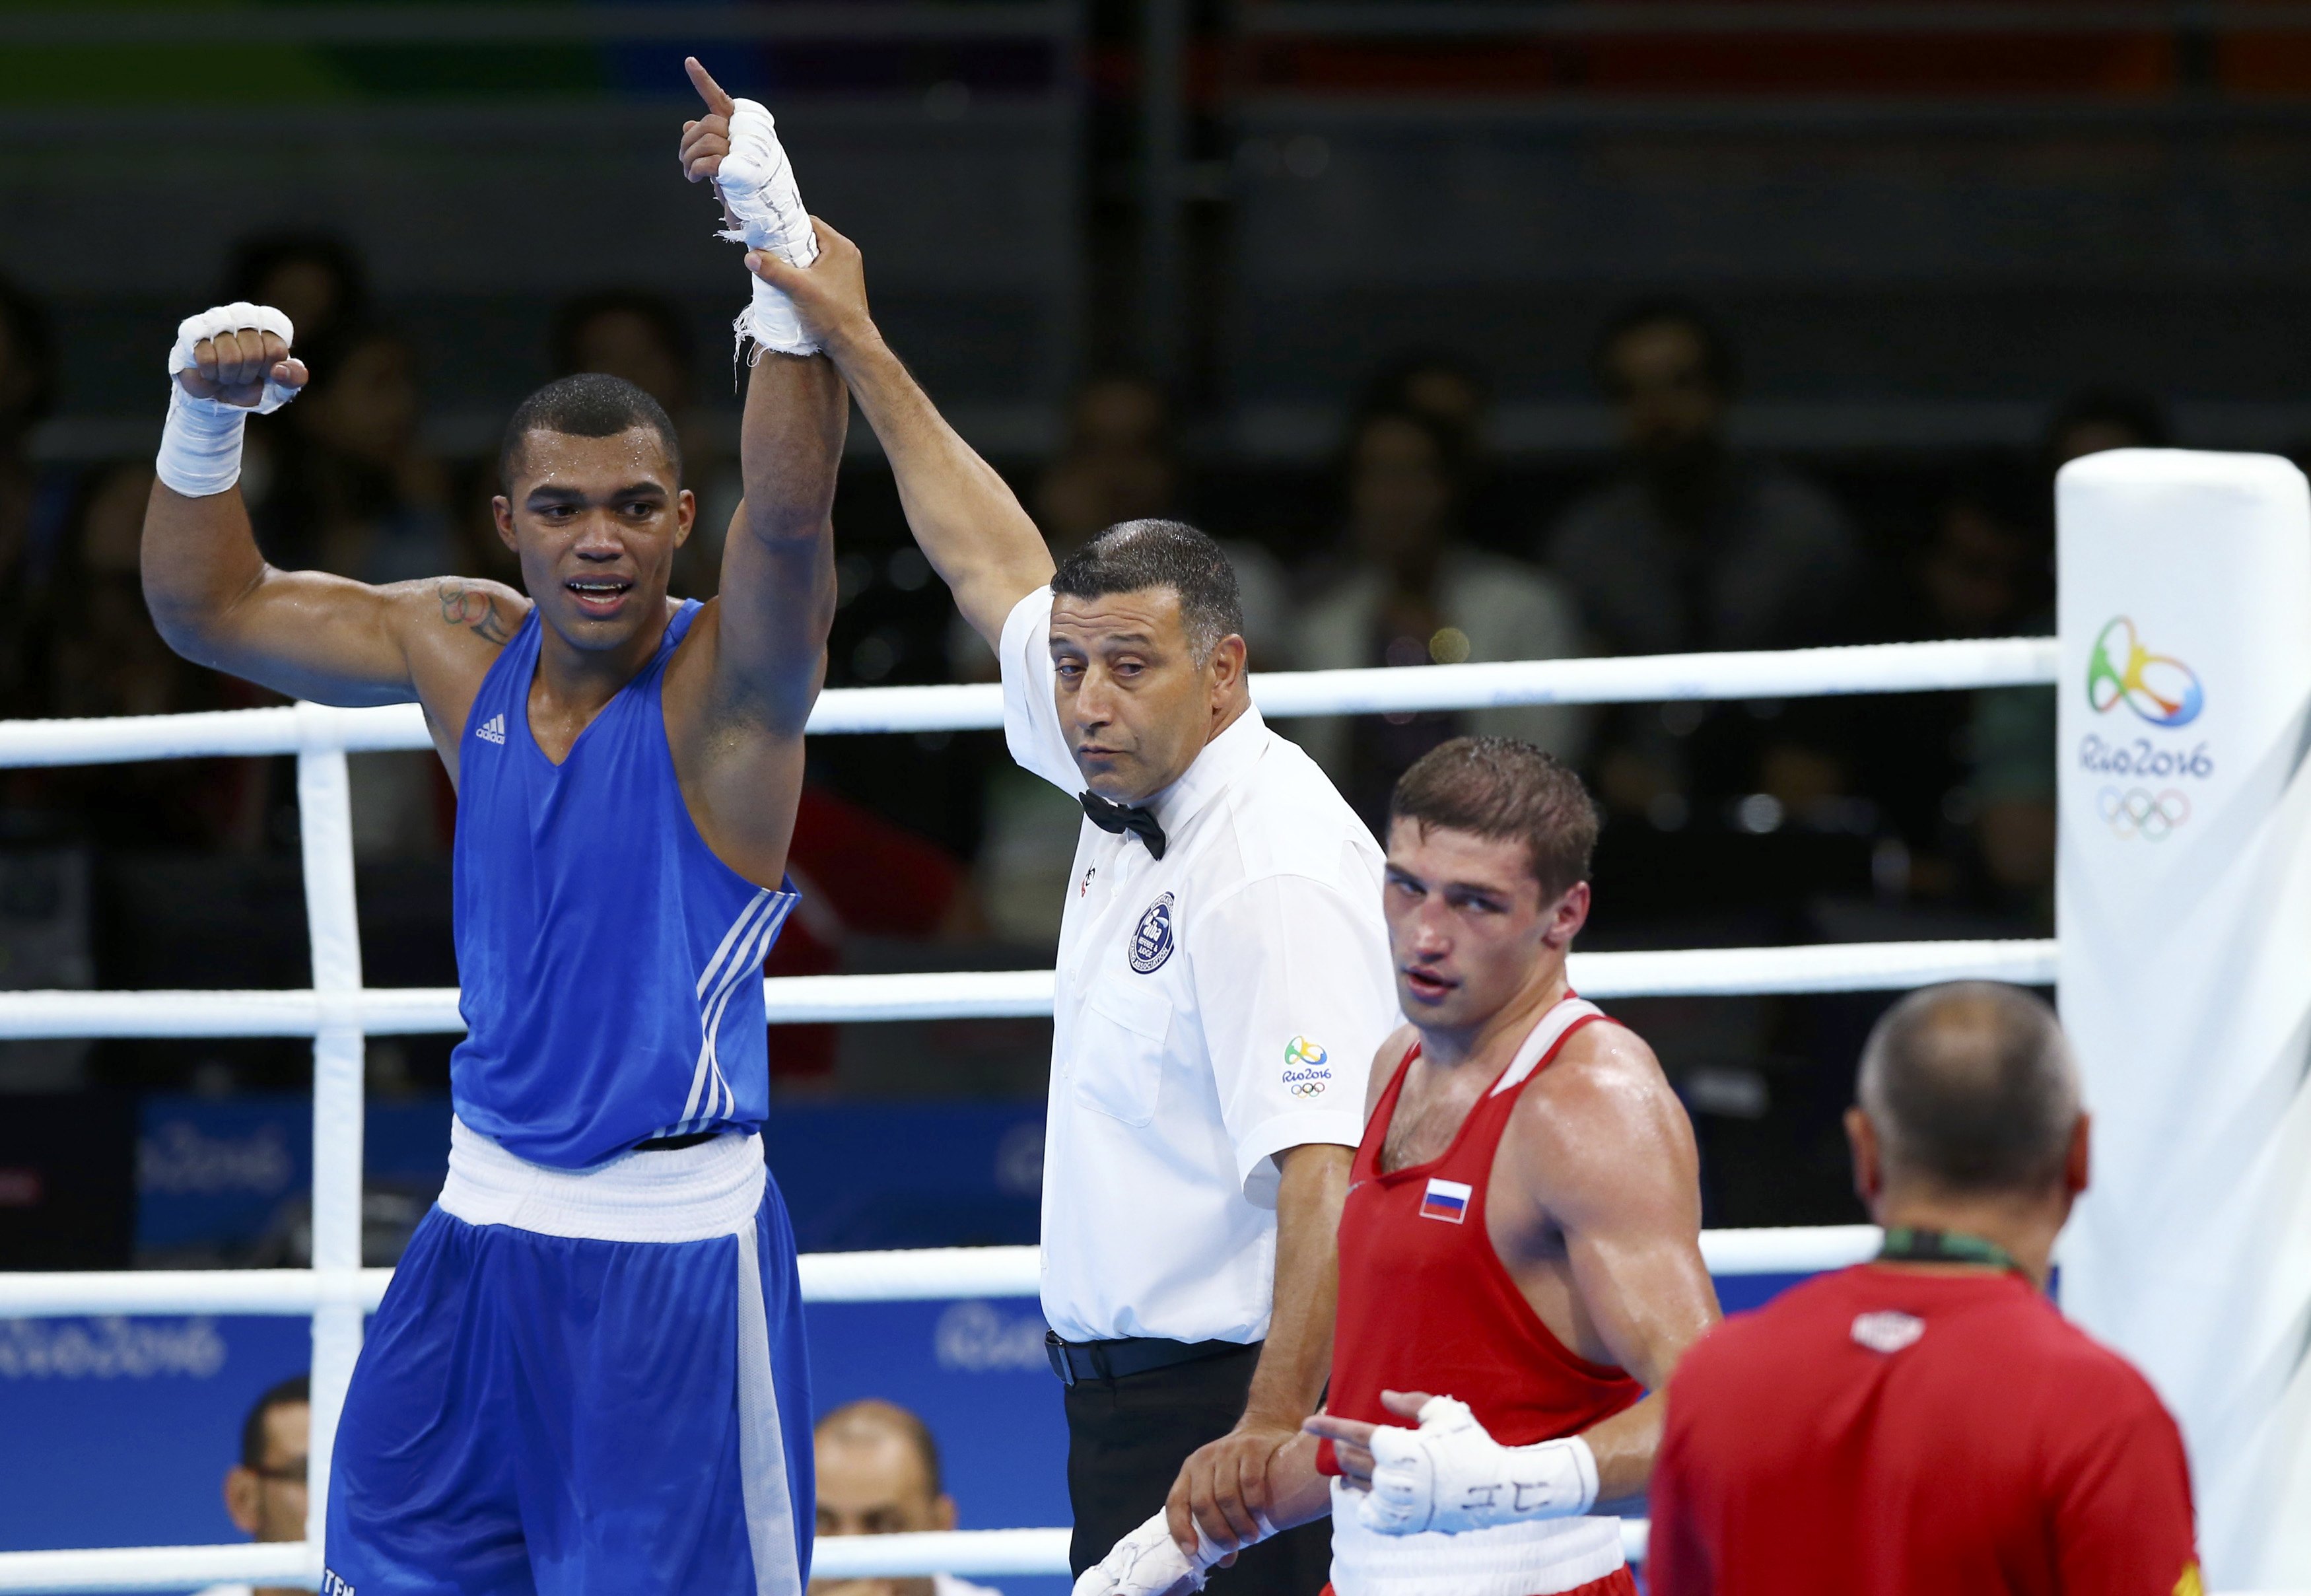 Criollo Albert Ramírez avanzó a semifinales de Boxeo en #Rio2016